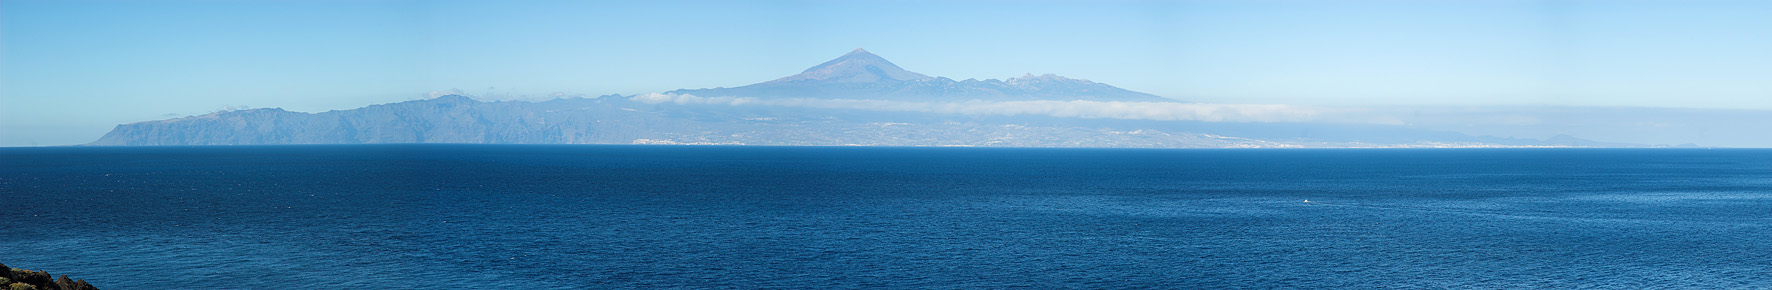 teneriffa.jpg - Blick auf Teneriffa: Pic de Teide